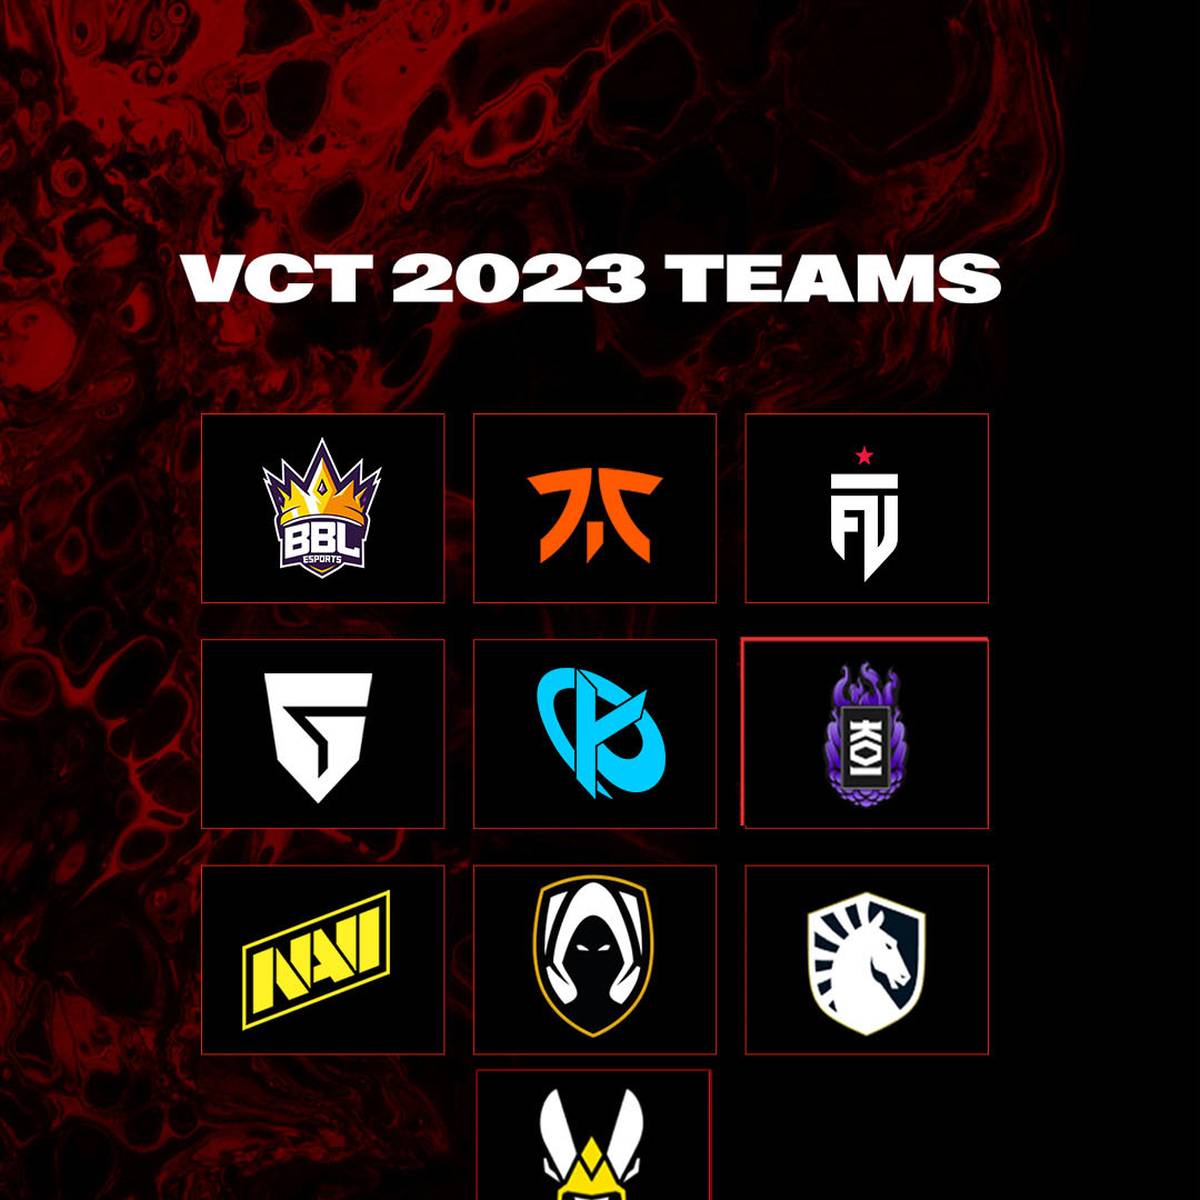 Ab 2023 ändert sich die Königsklasse des Valorant eSports drastisch. In insgesamt drei internationalen Ligen werden ab dem kommenden Jahr die besten Teams gegeneinander antreten.